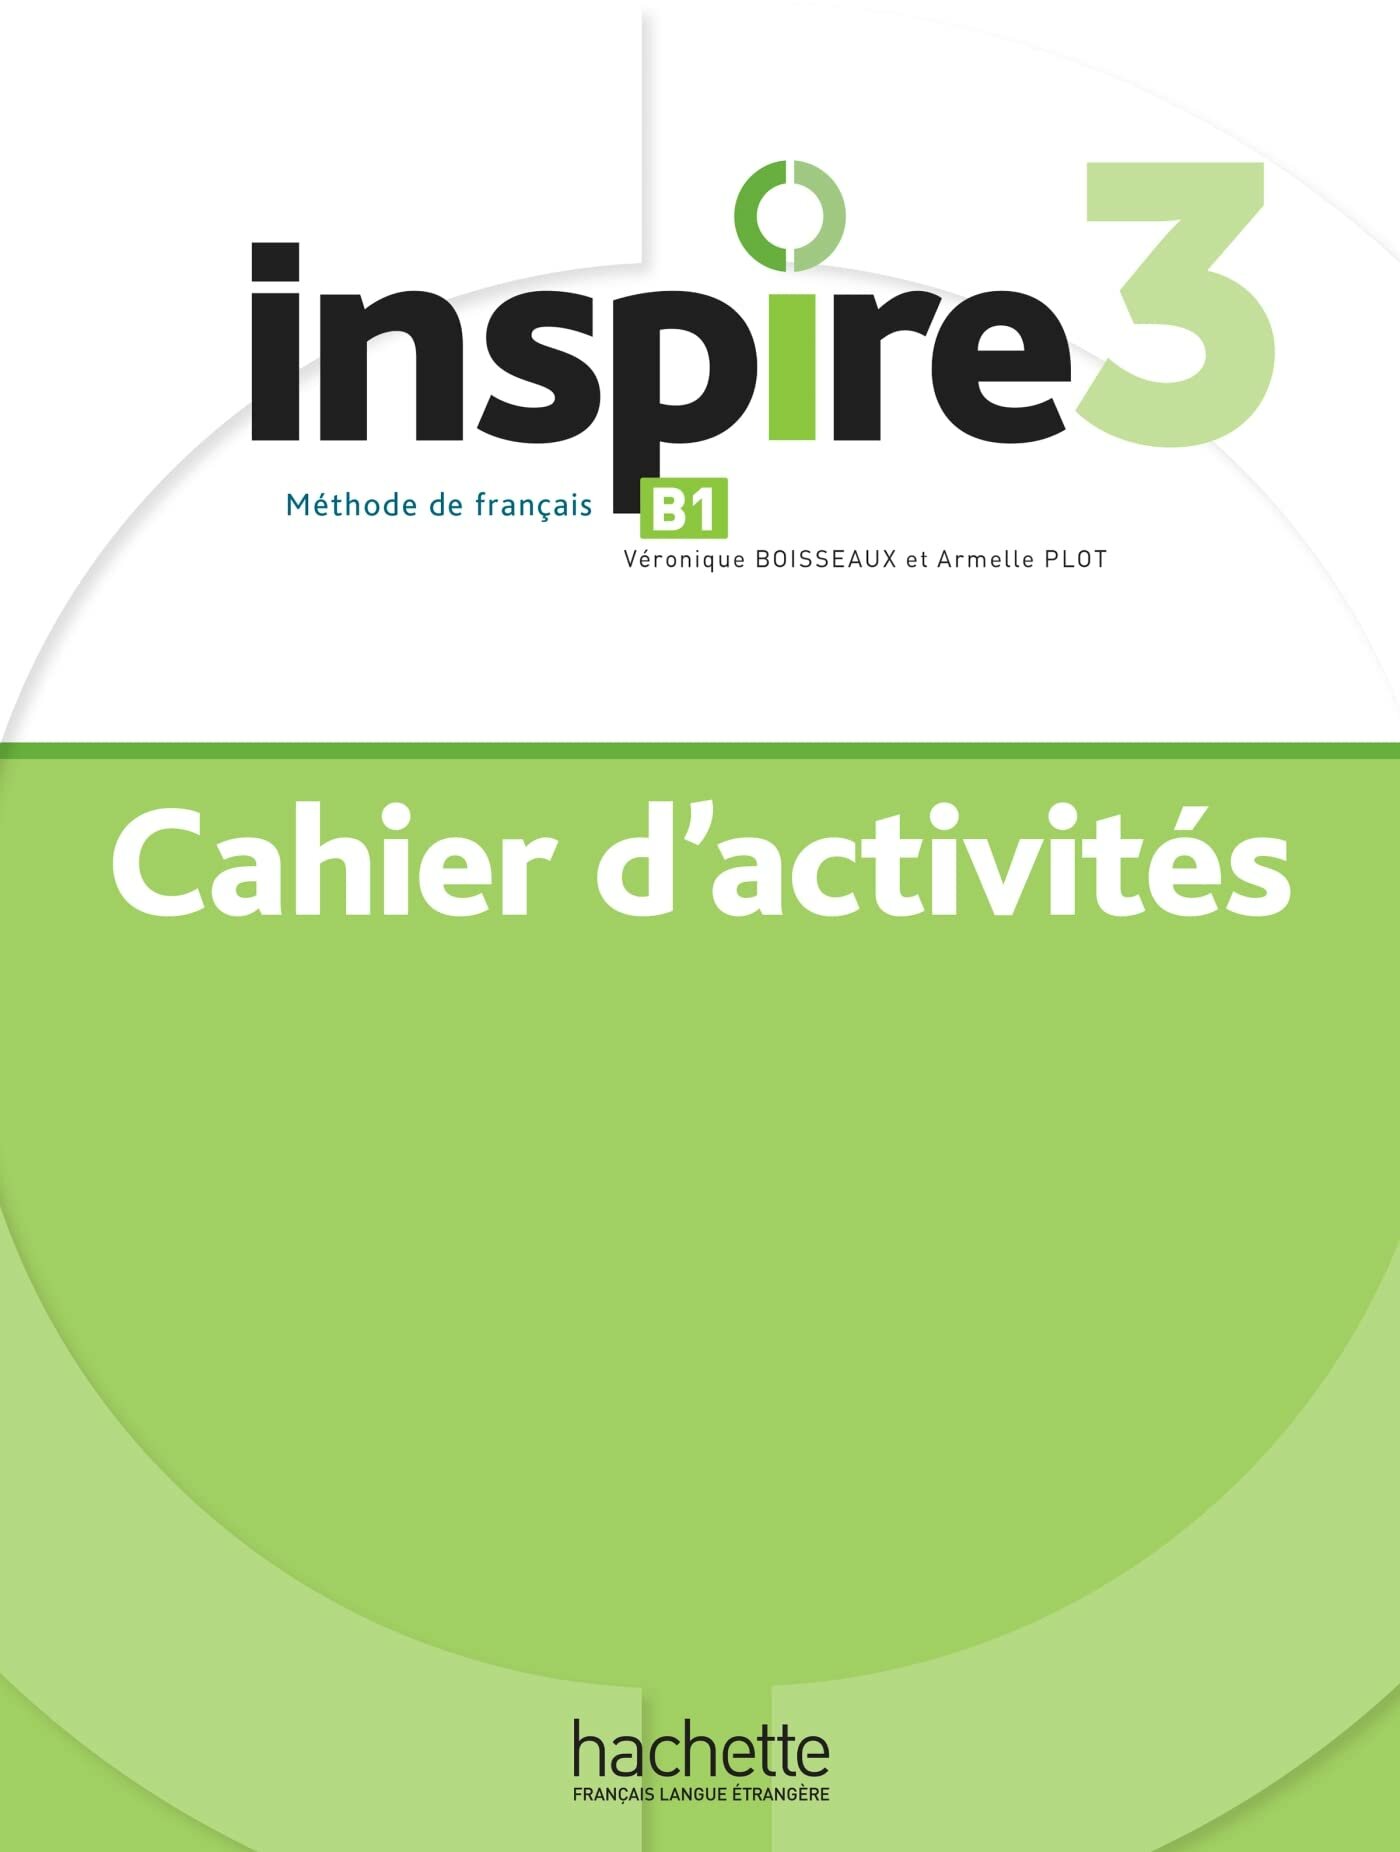 Inspire 3 : Cahier d'activités + audio téléchargeable, рабочая тетрадь по французскому языку для студентов и взрослых